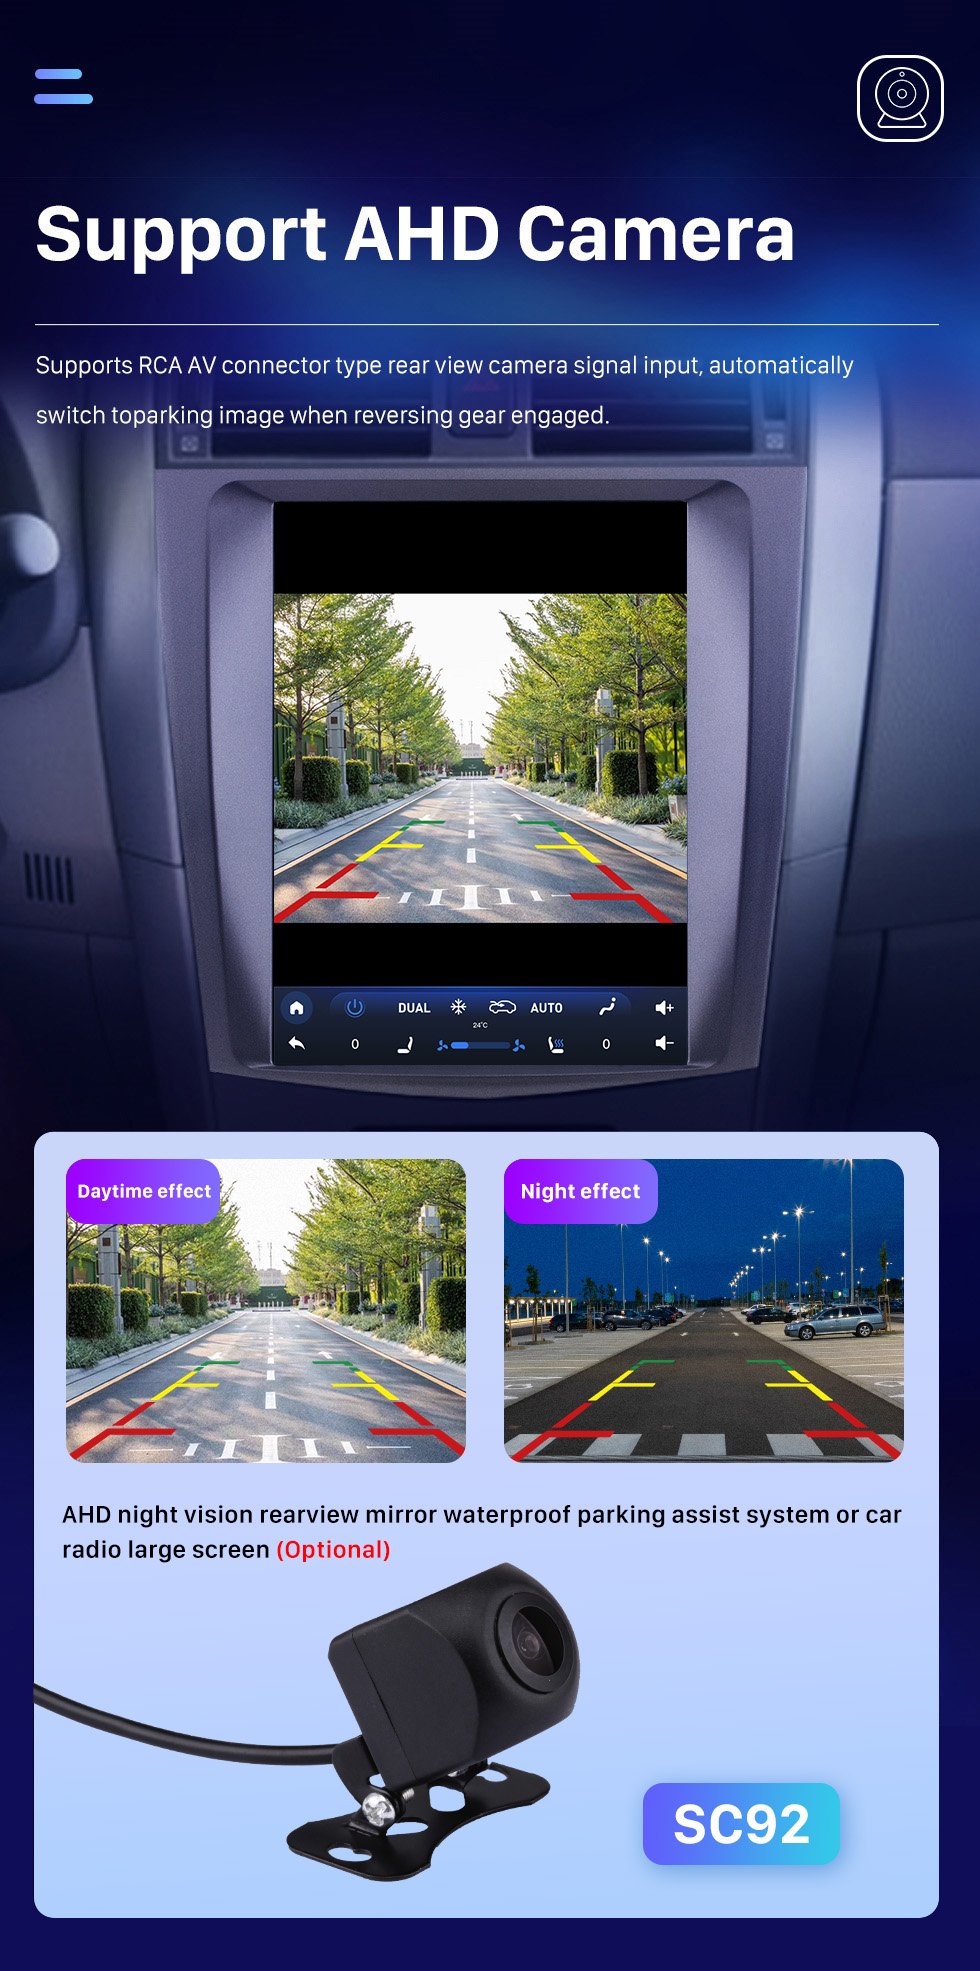 Seicane 9,7-дюймовый мультимедийный авторадио Android 10.0 GPS-навигационная система для Toyota Corolla 2006-2012 годов с сенсорным экраном 4G WiFi 1080P Mirror Link OBD2